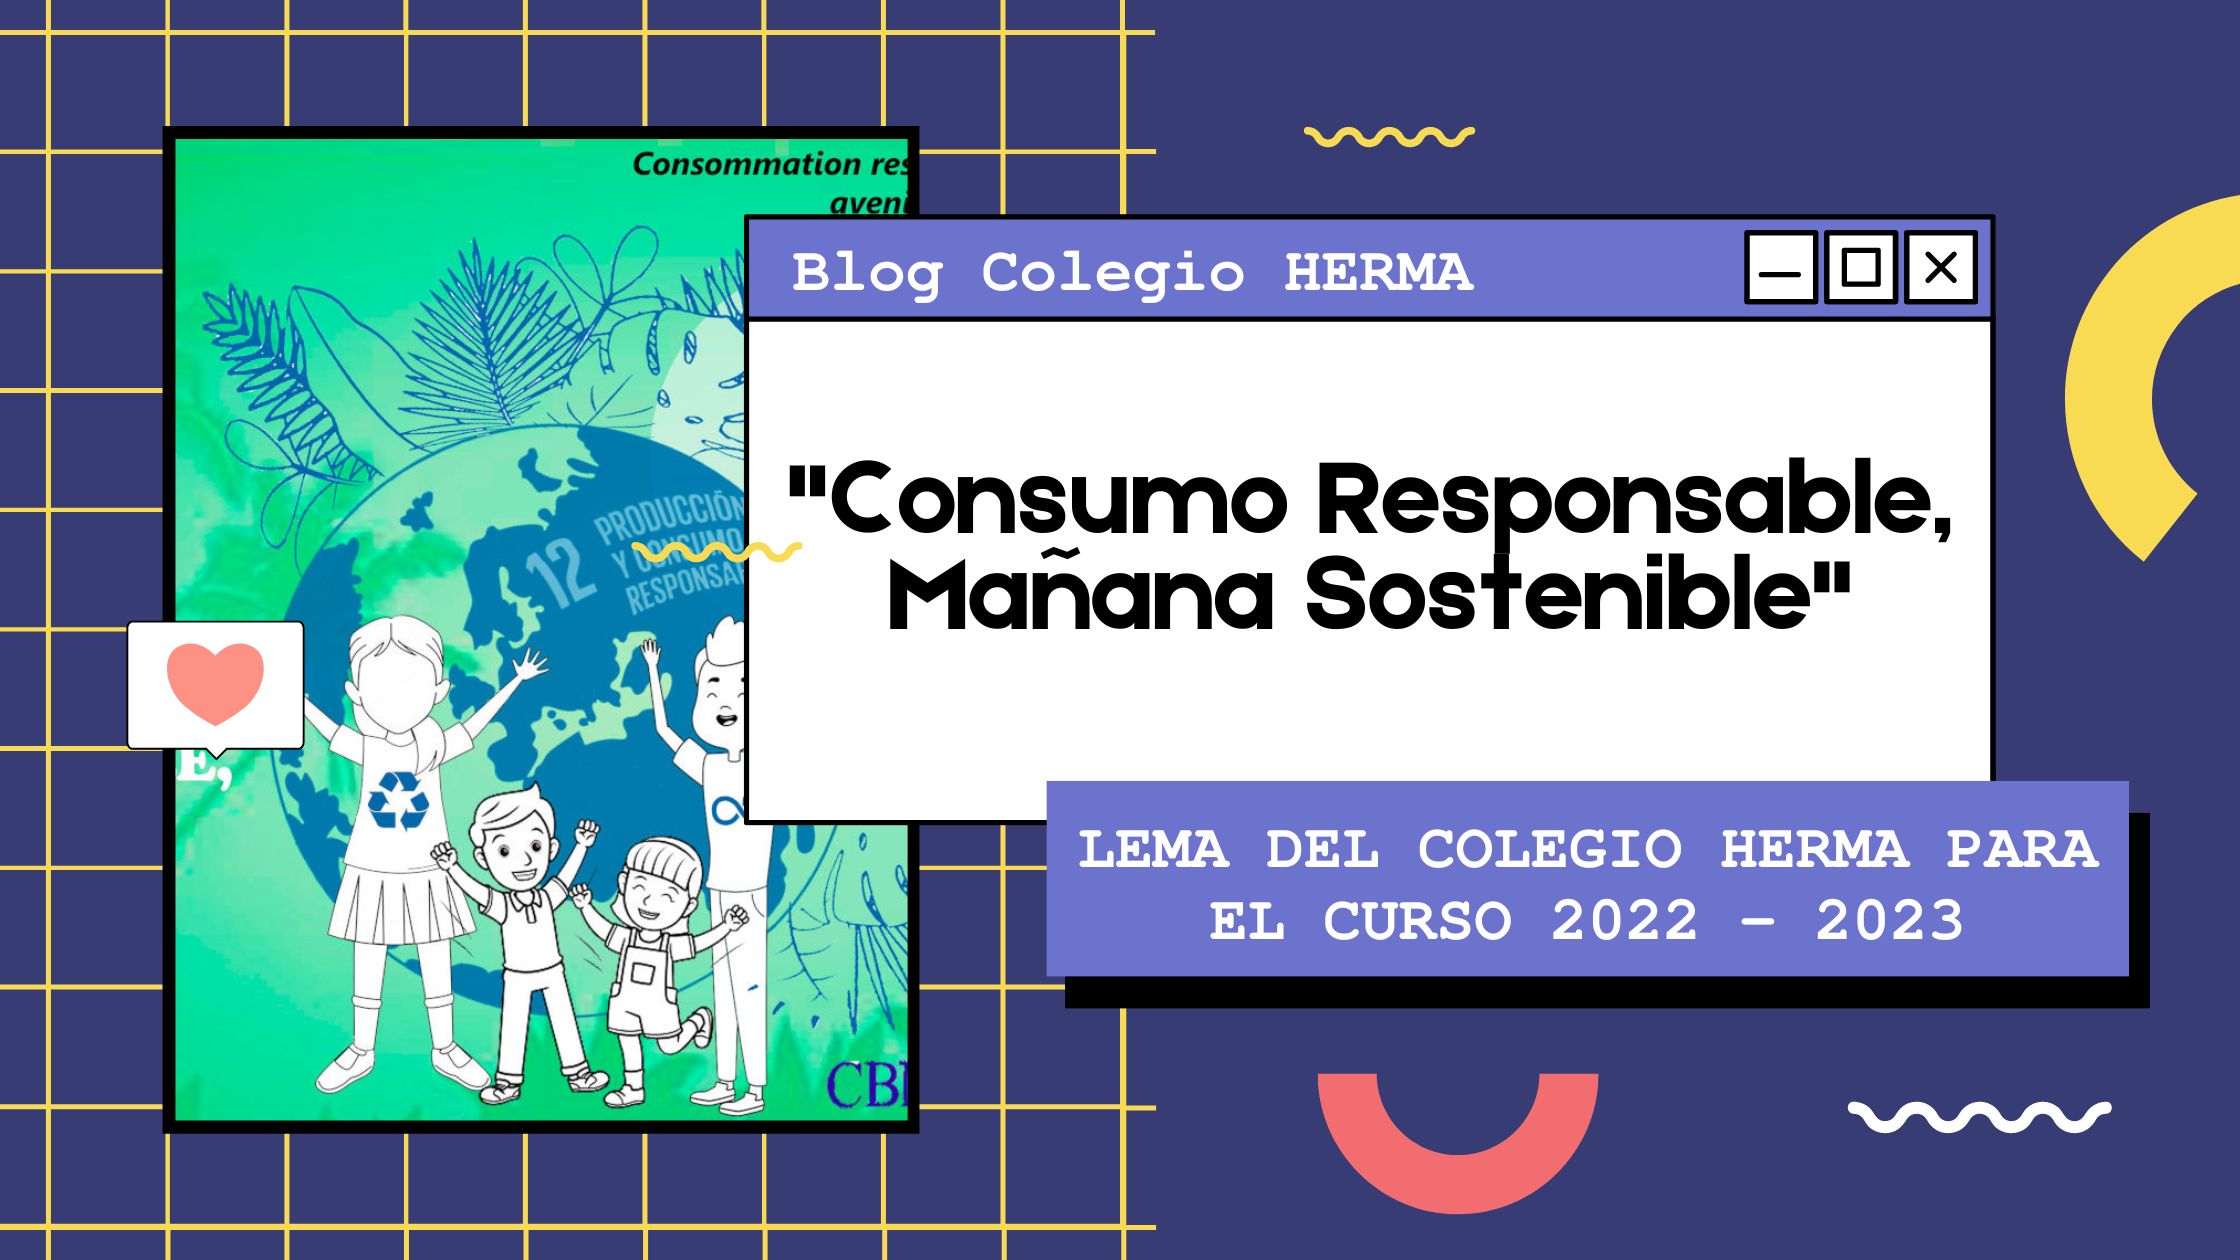 Consumo Responsable Mañana Sostenible - Blog Colegio HERMA